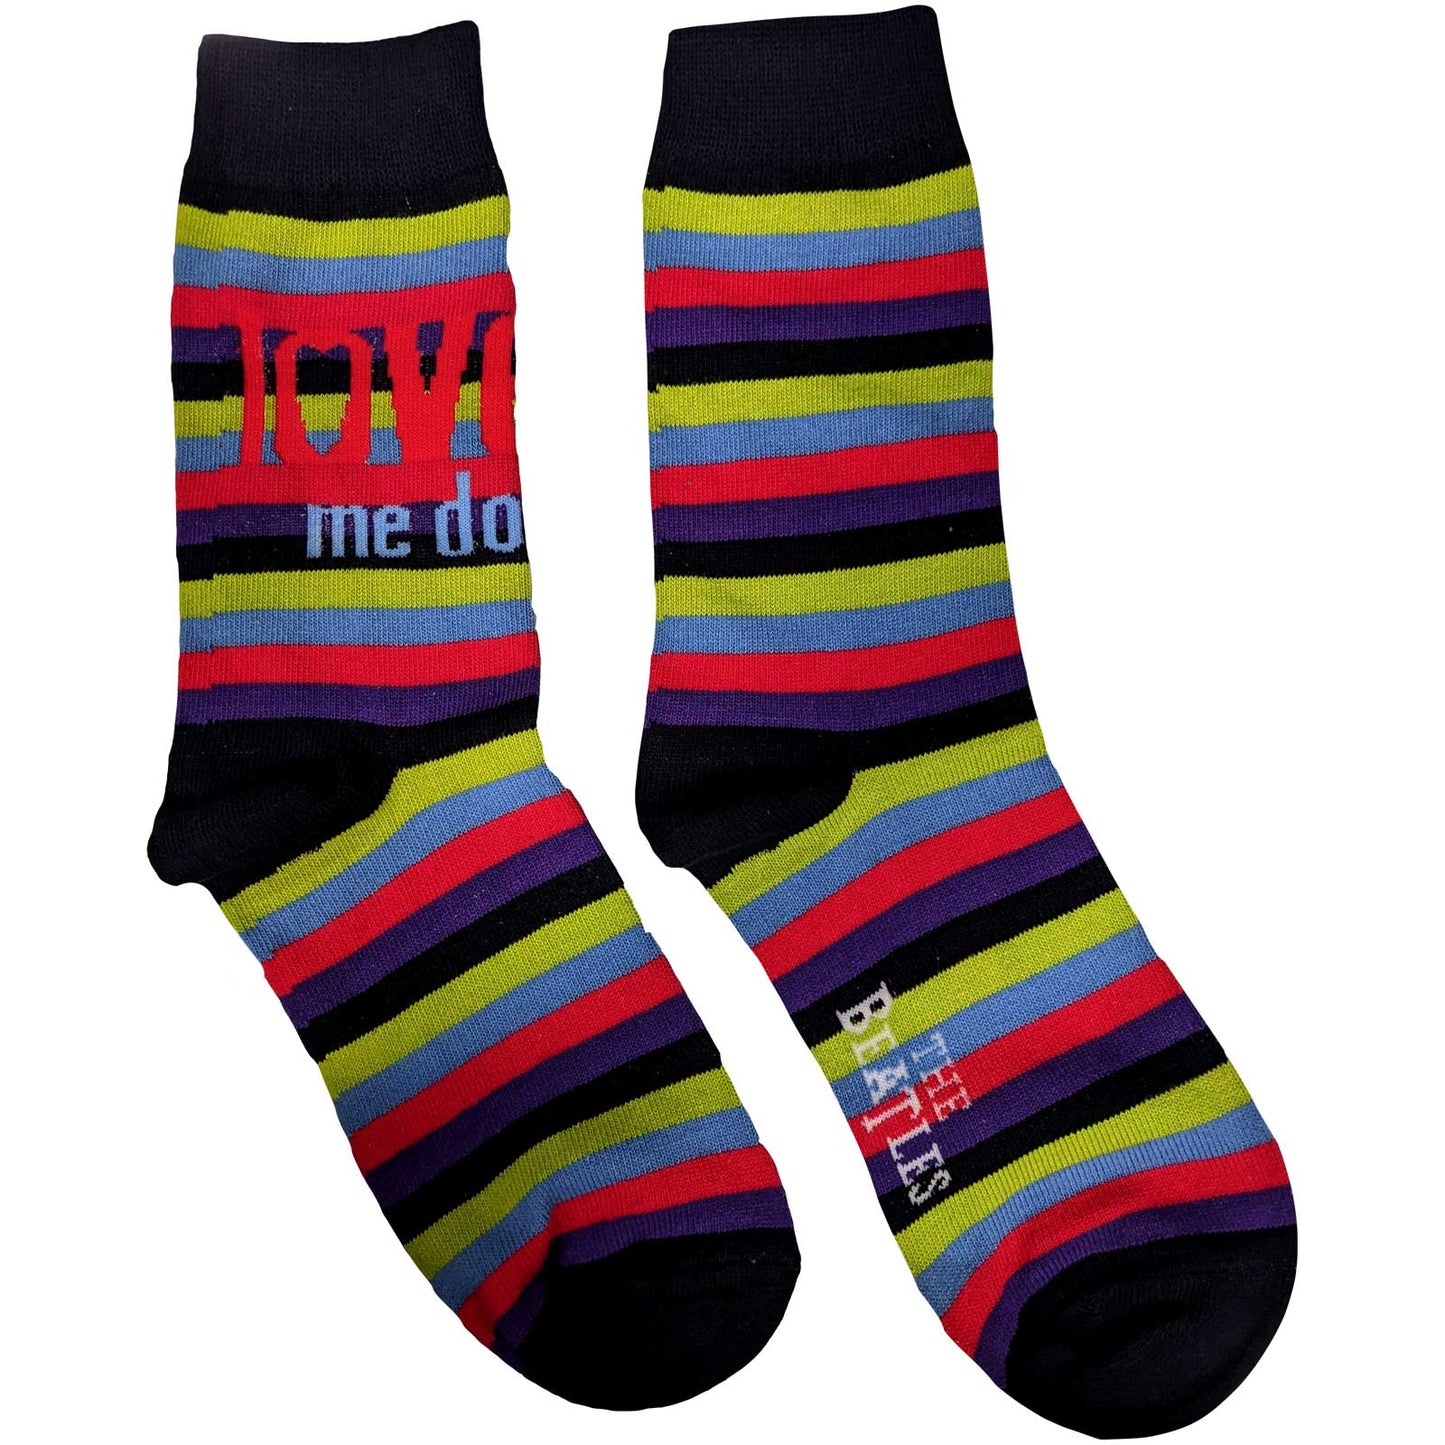 The Beatles Socks: Love Me Do